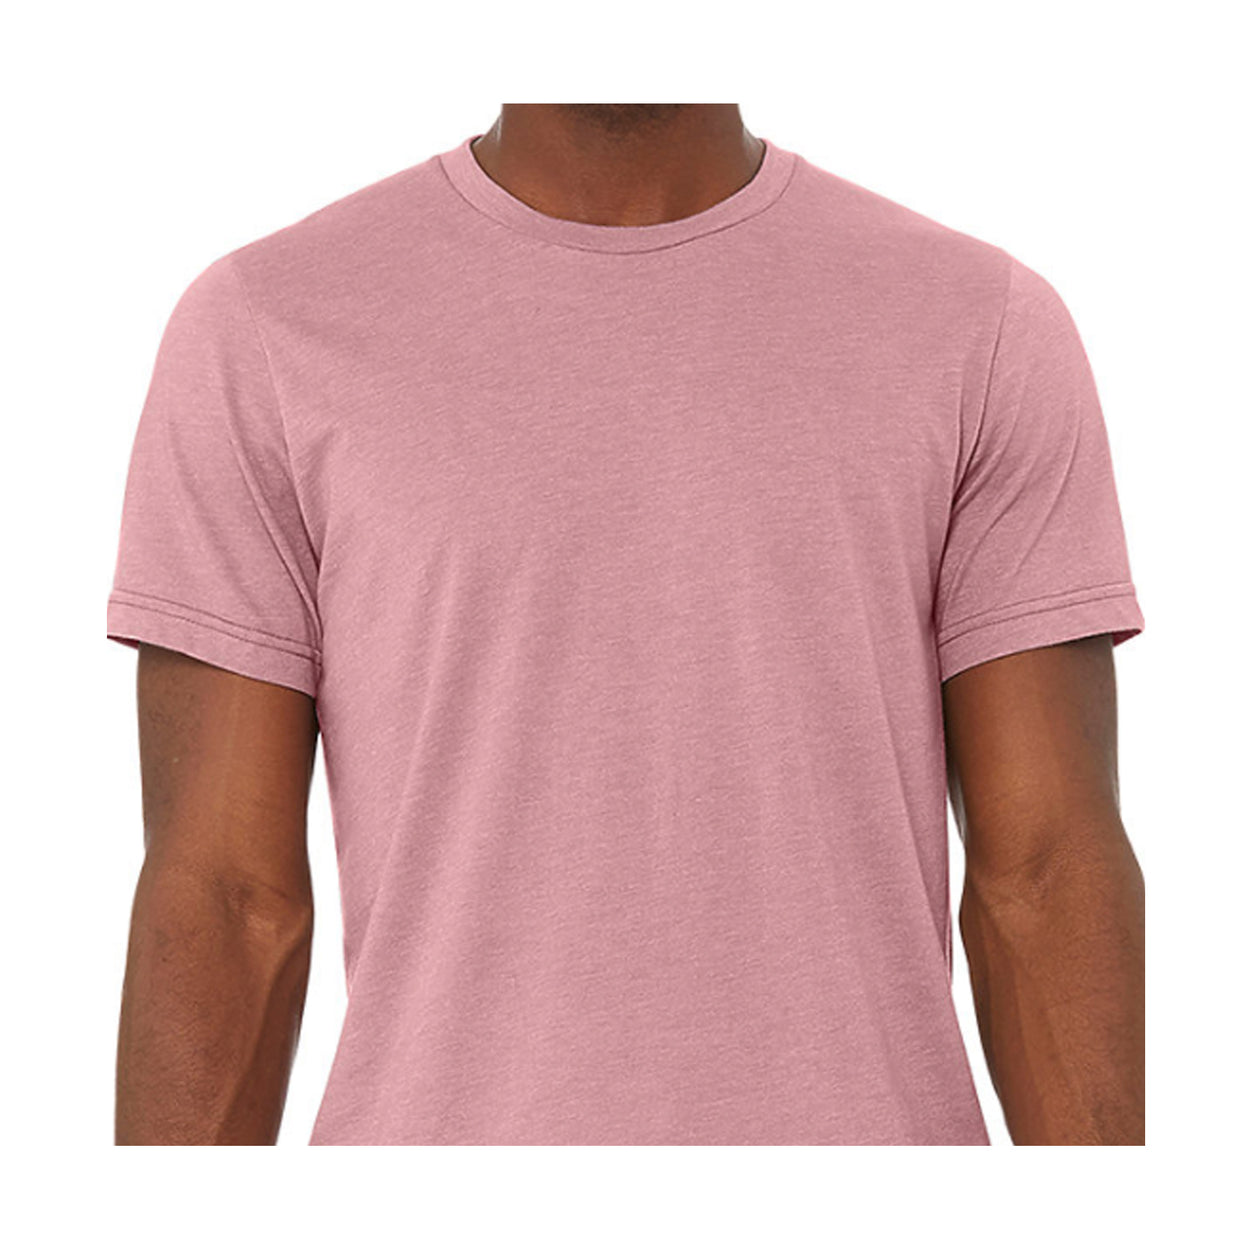 Unisex Heathered T-shirts